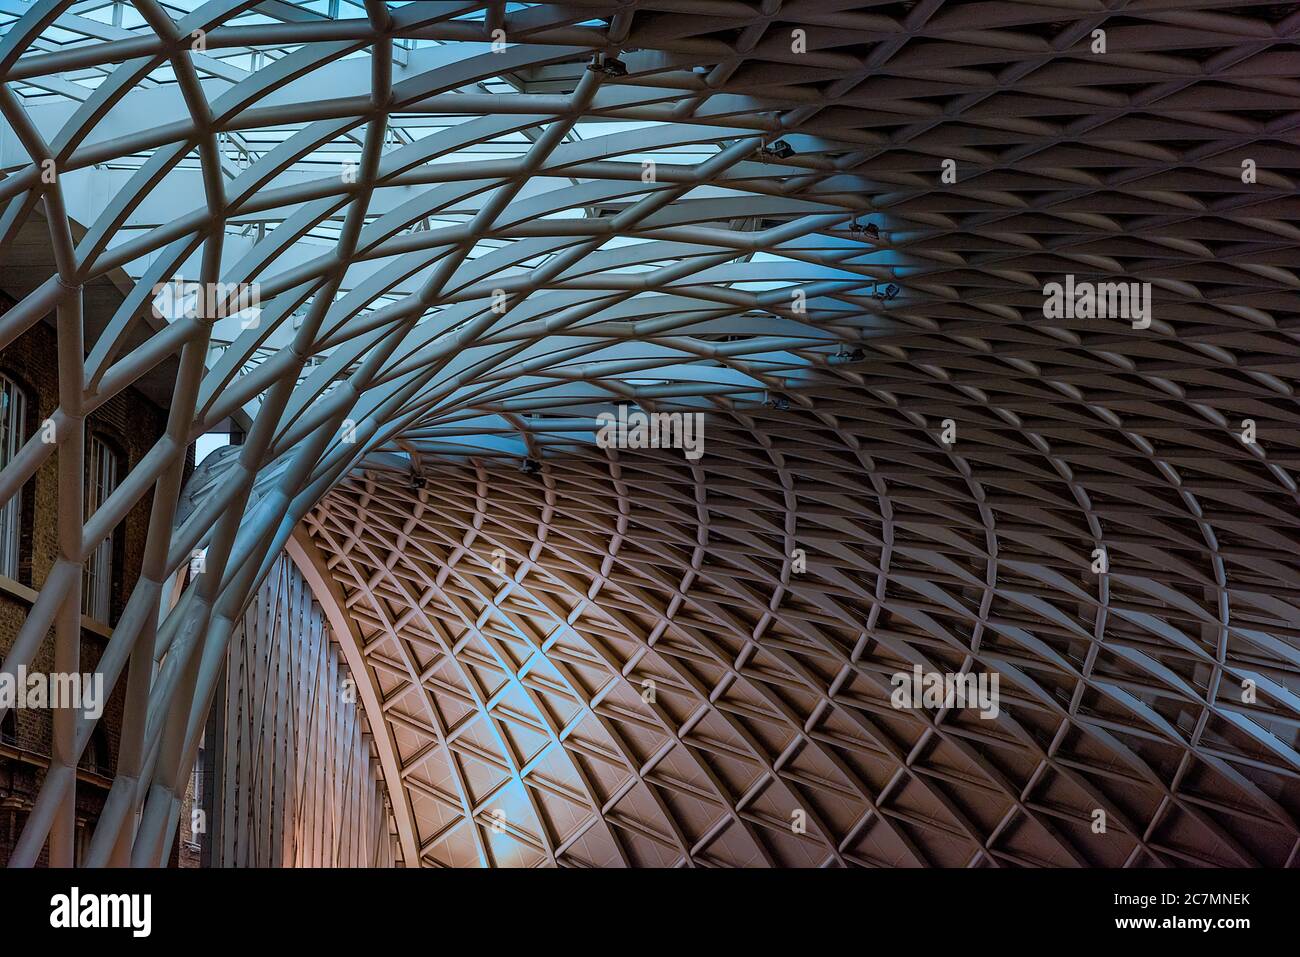 Londra, UK - Gen 2020: Il soffitto a reticolo contemporaneo dell'atrio della stazione ferroviaria di King's Cross, progettato da John McAslan e dai suoi partner. King's Cros Foto Stock